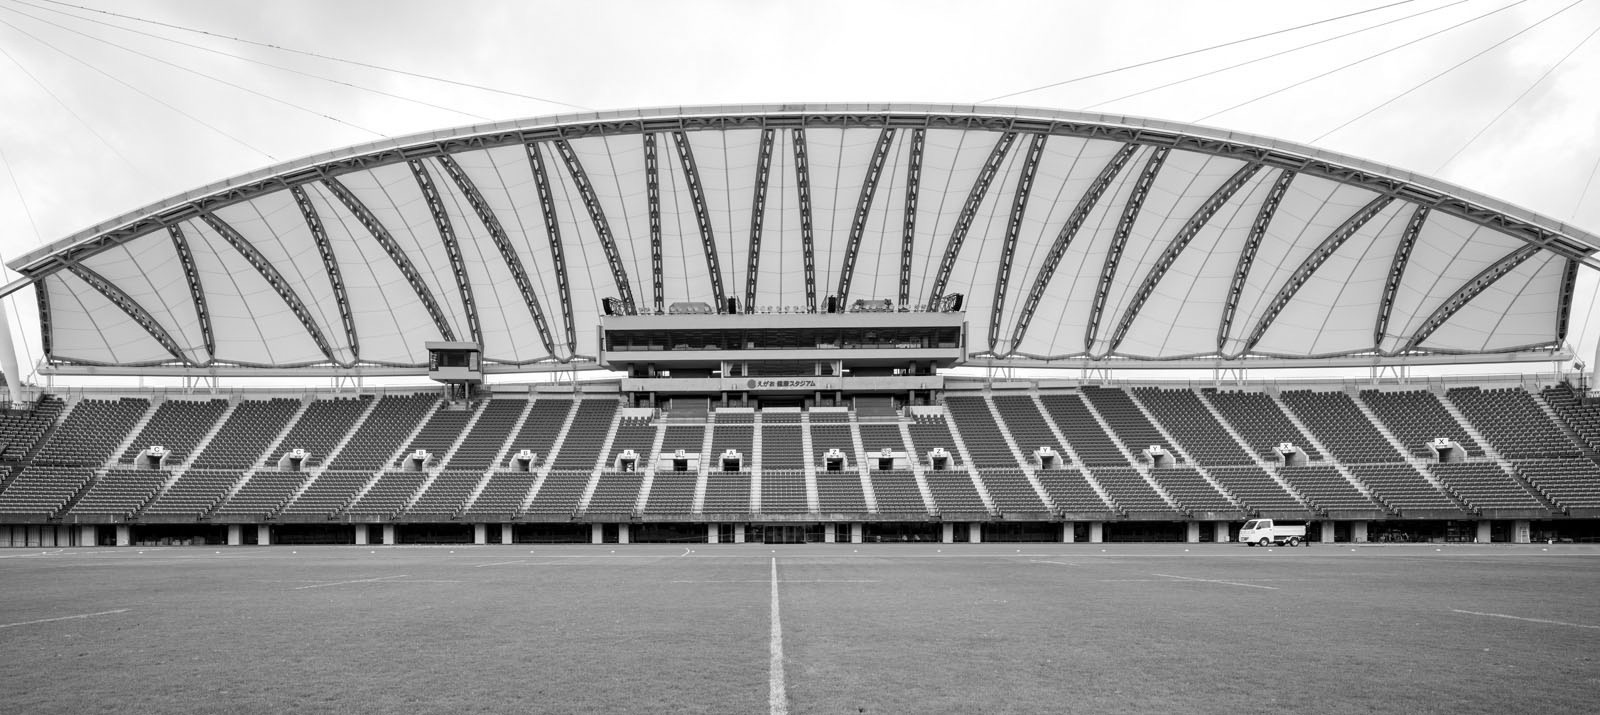 Kenko Stadium